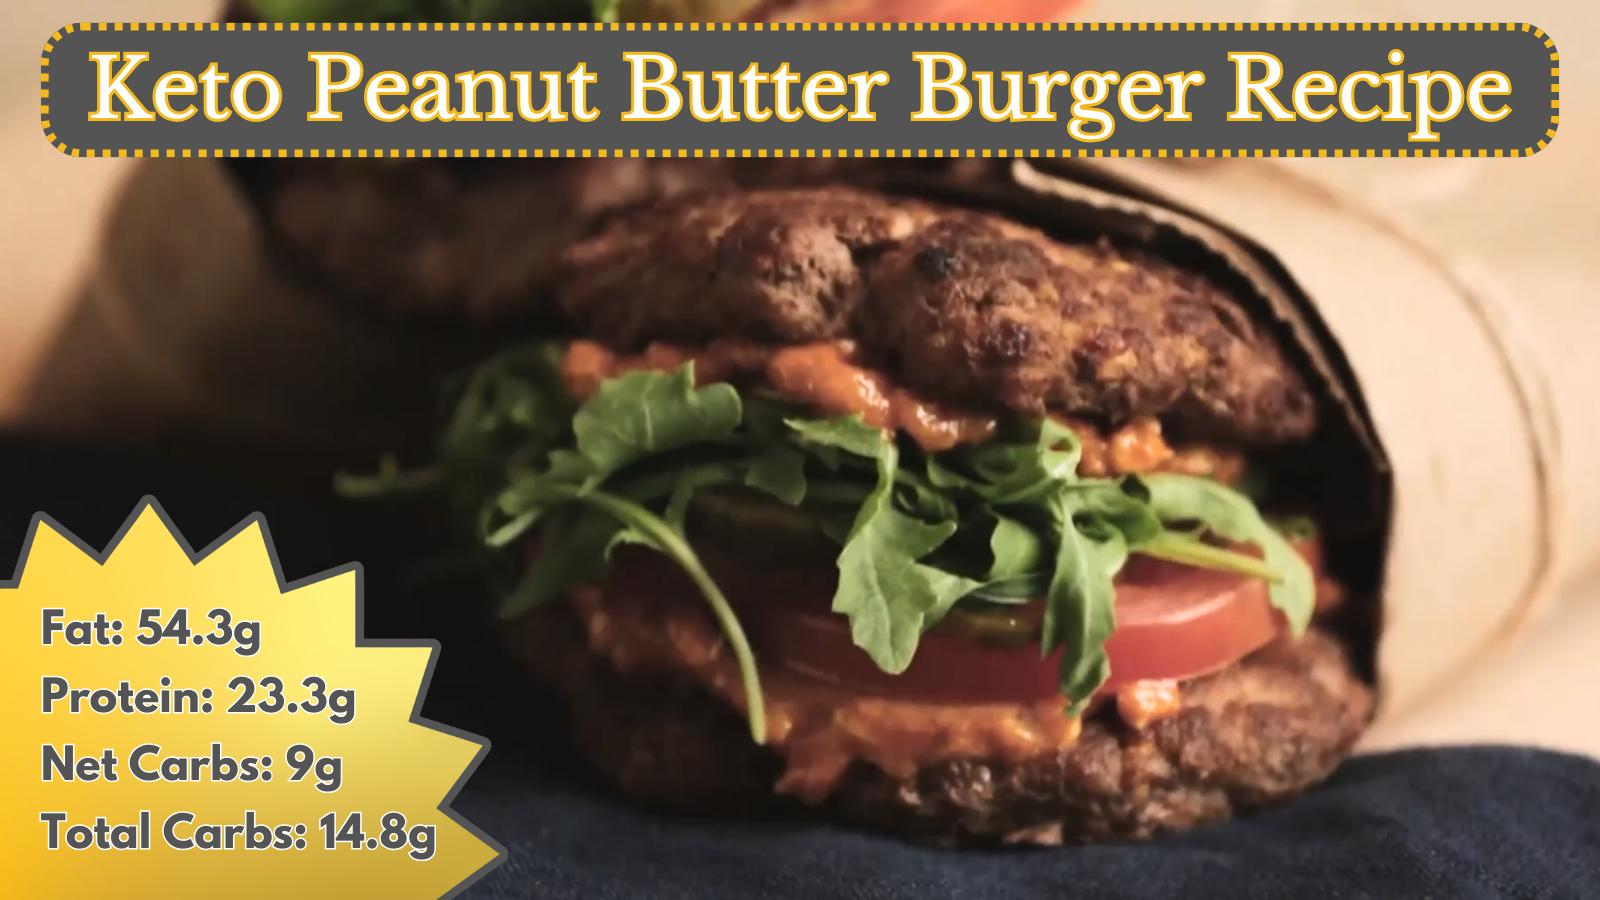 Keto Peanut Butter Burger Recipe: A Unique Twist on a Classic